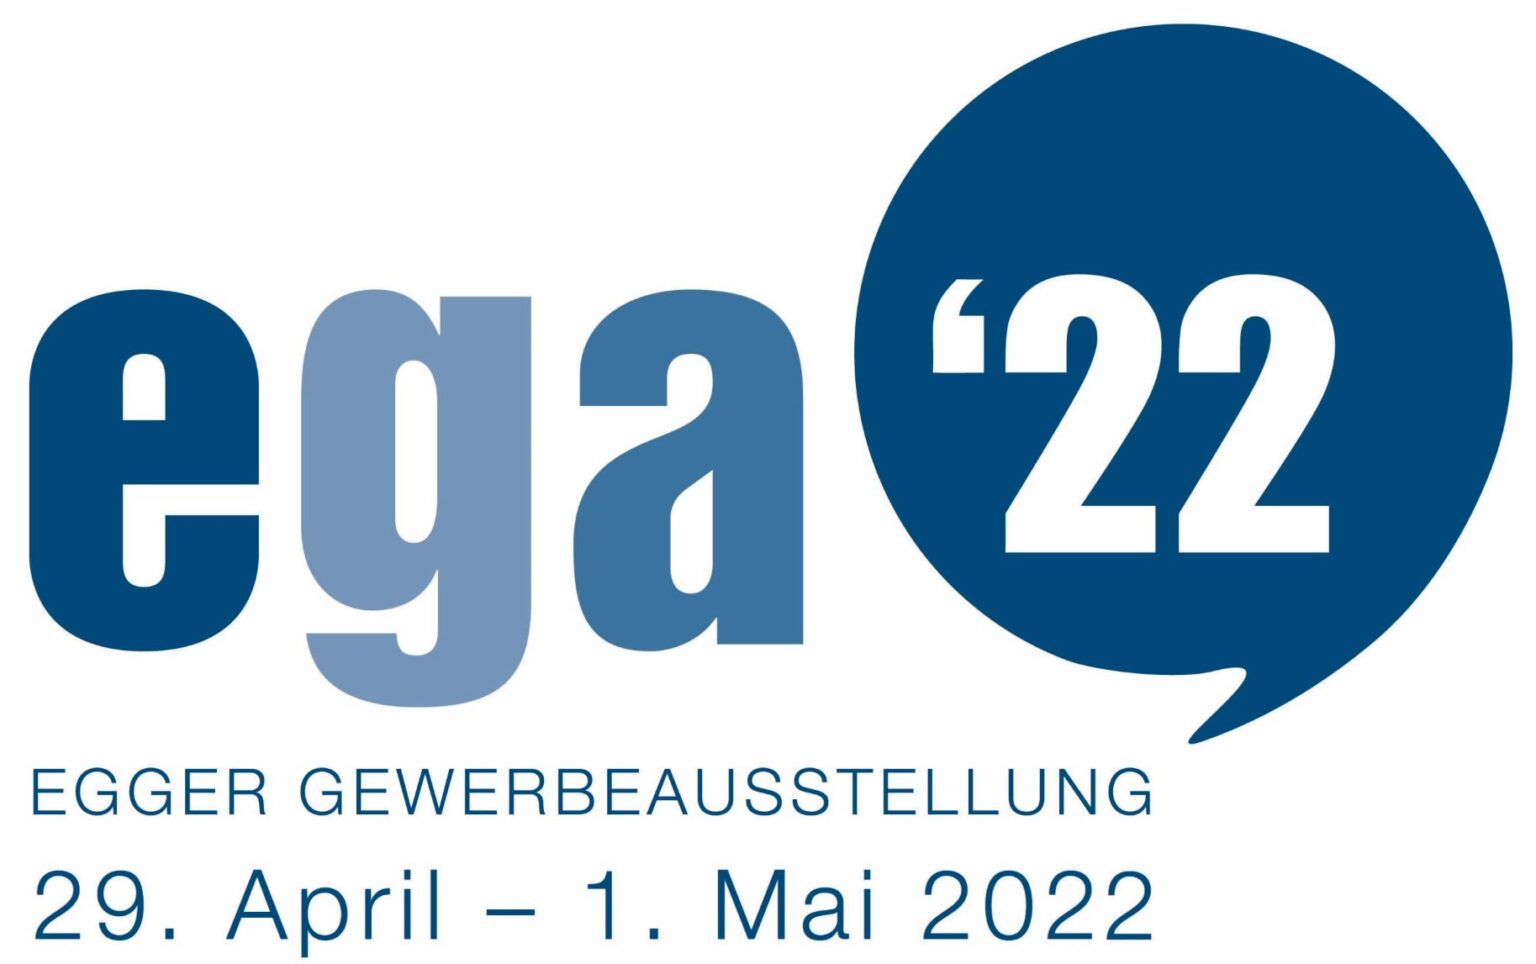 ega'22 - Egger Gewerbeausstellung - Autorama AG Wetzikon